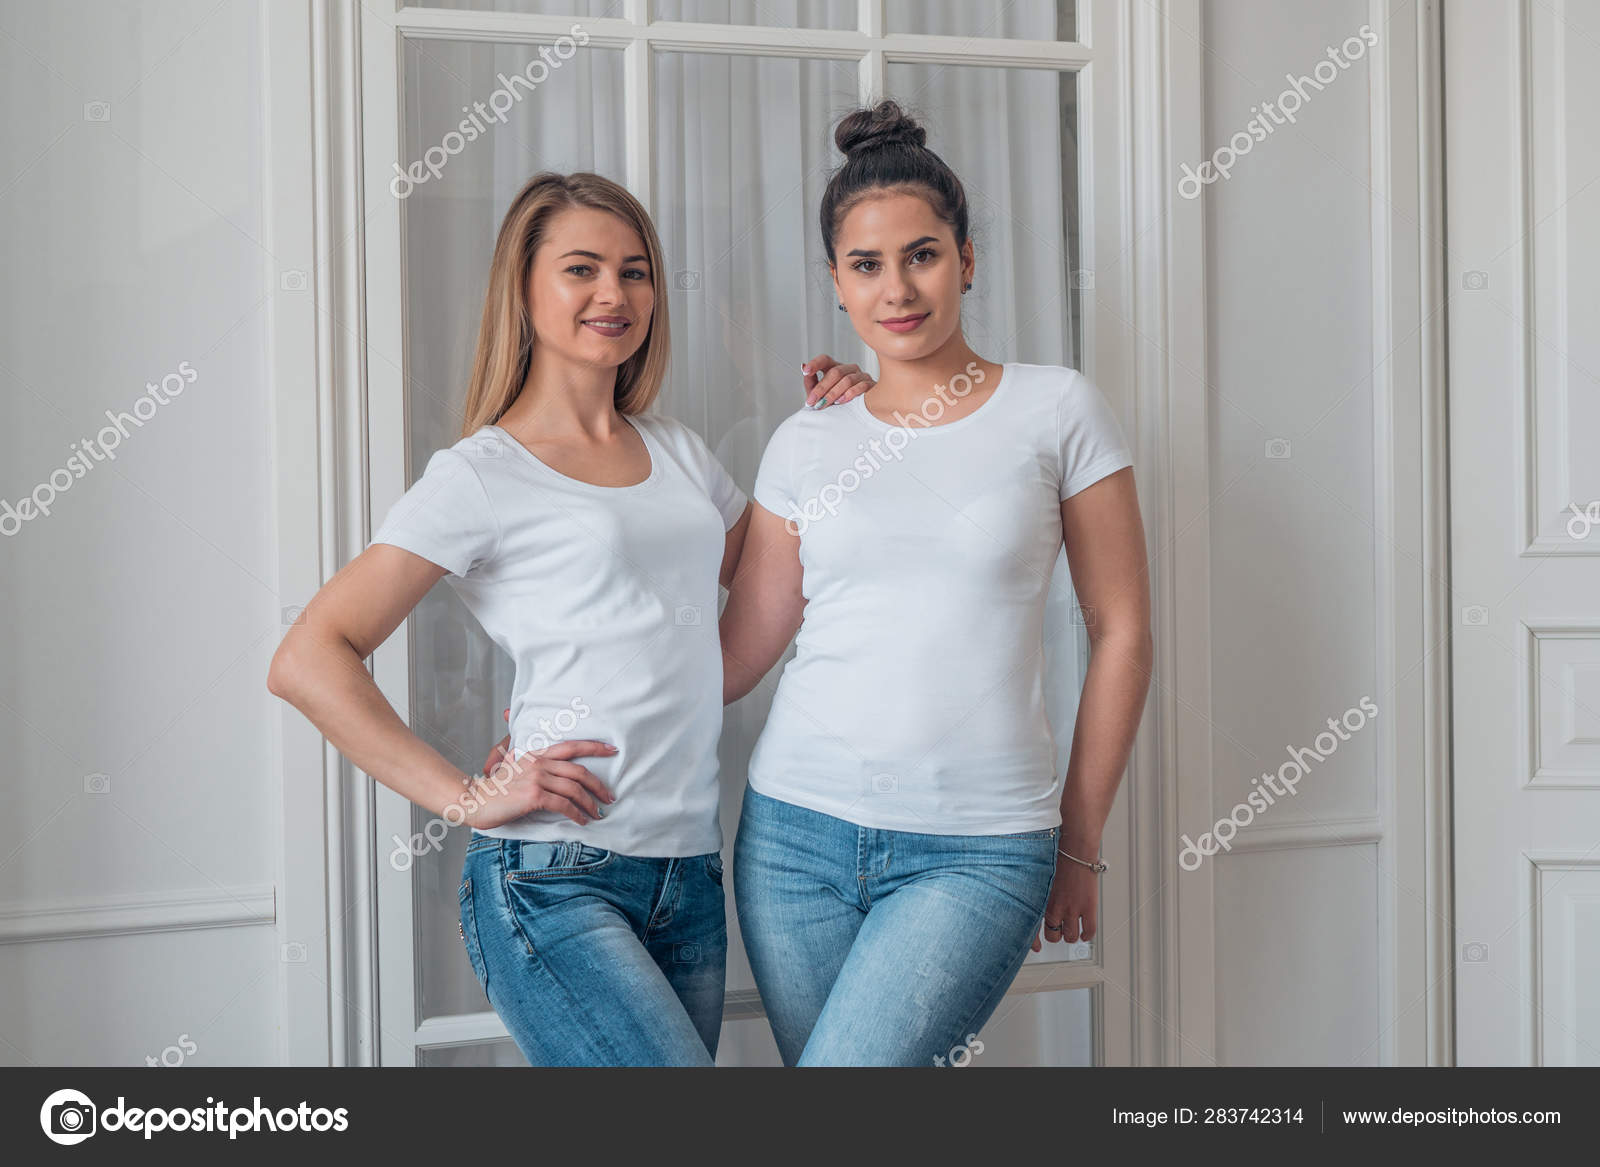 Portræt af sød blondine og brunette i blå jeans og hvide t-shirts. Modellen af logoet på en hvid t-shirt . Stock-foto © 2735369.mail.ru #283742314